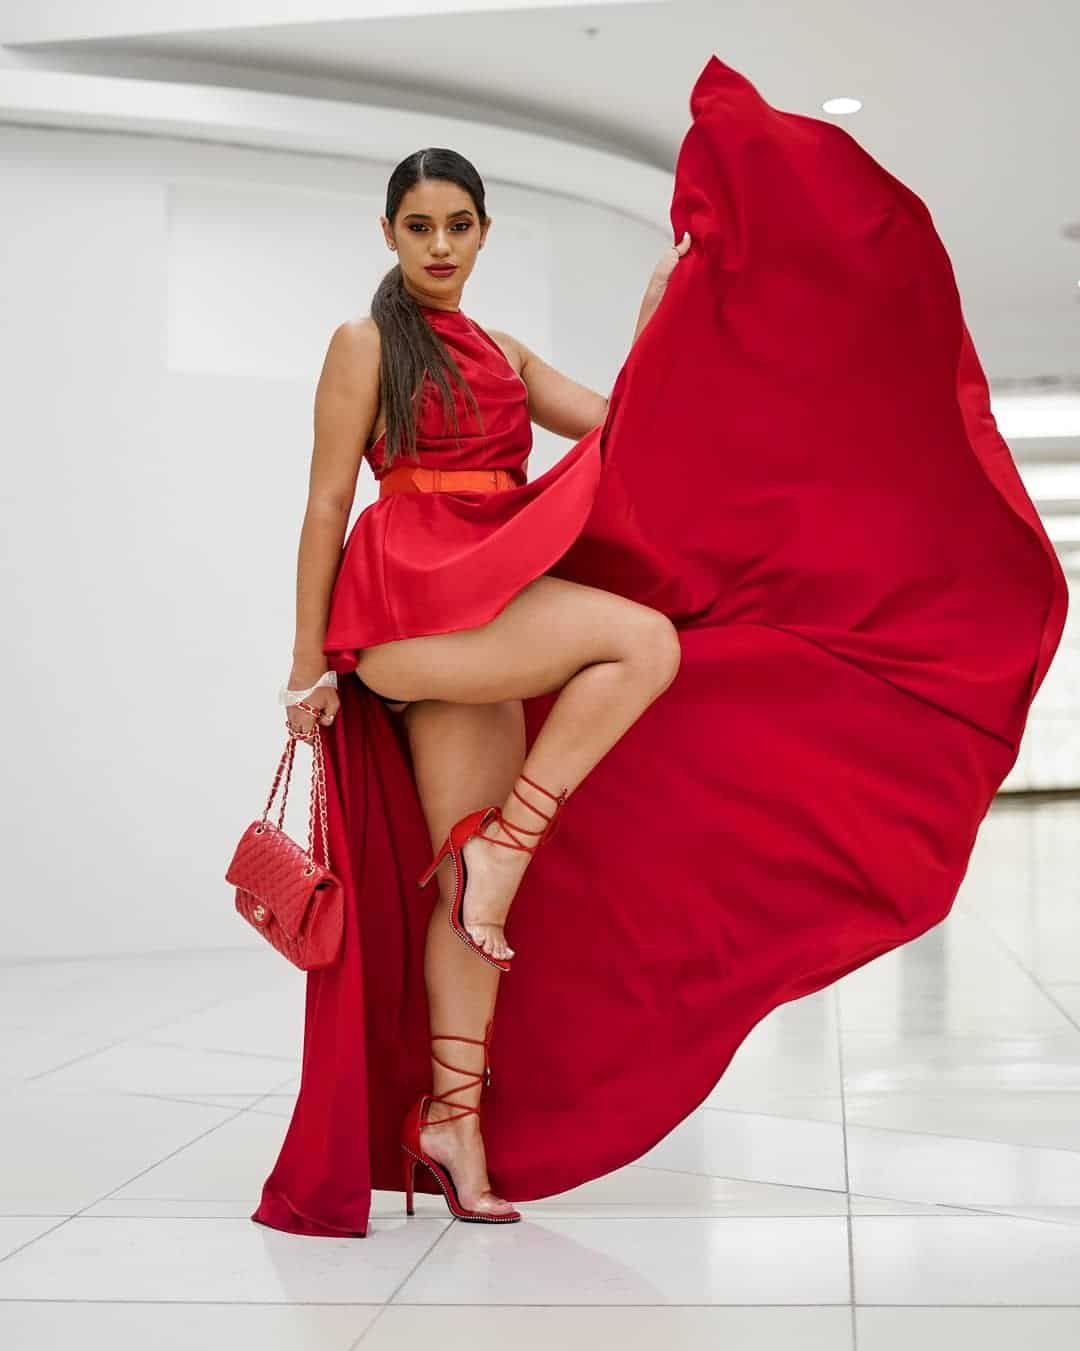 Kim-jayde-mullet-red-dress